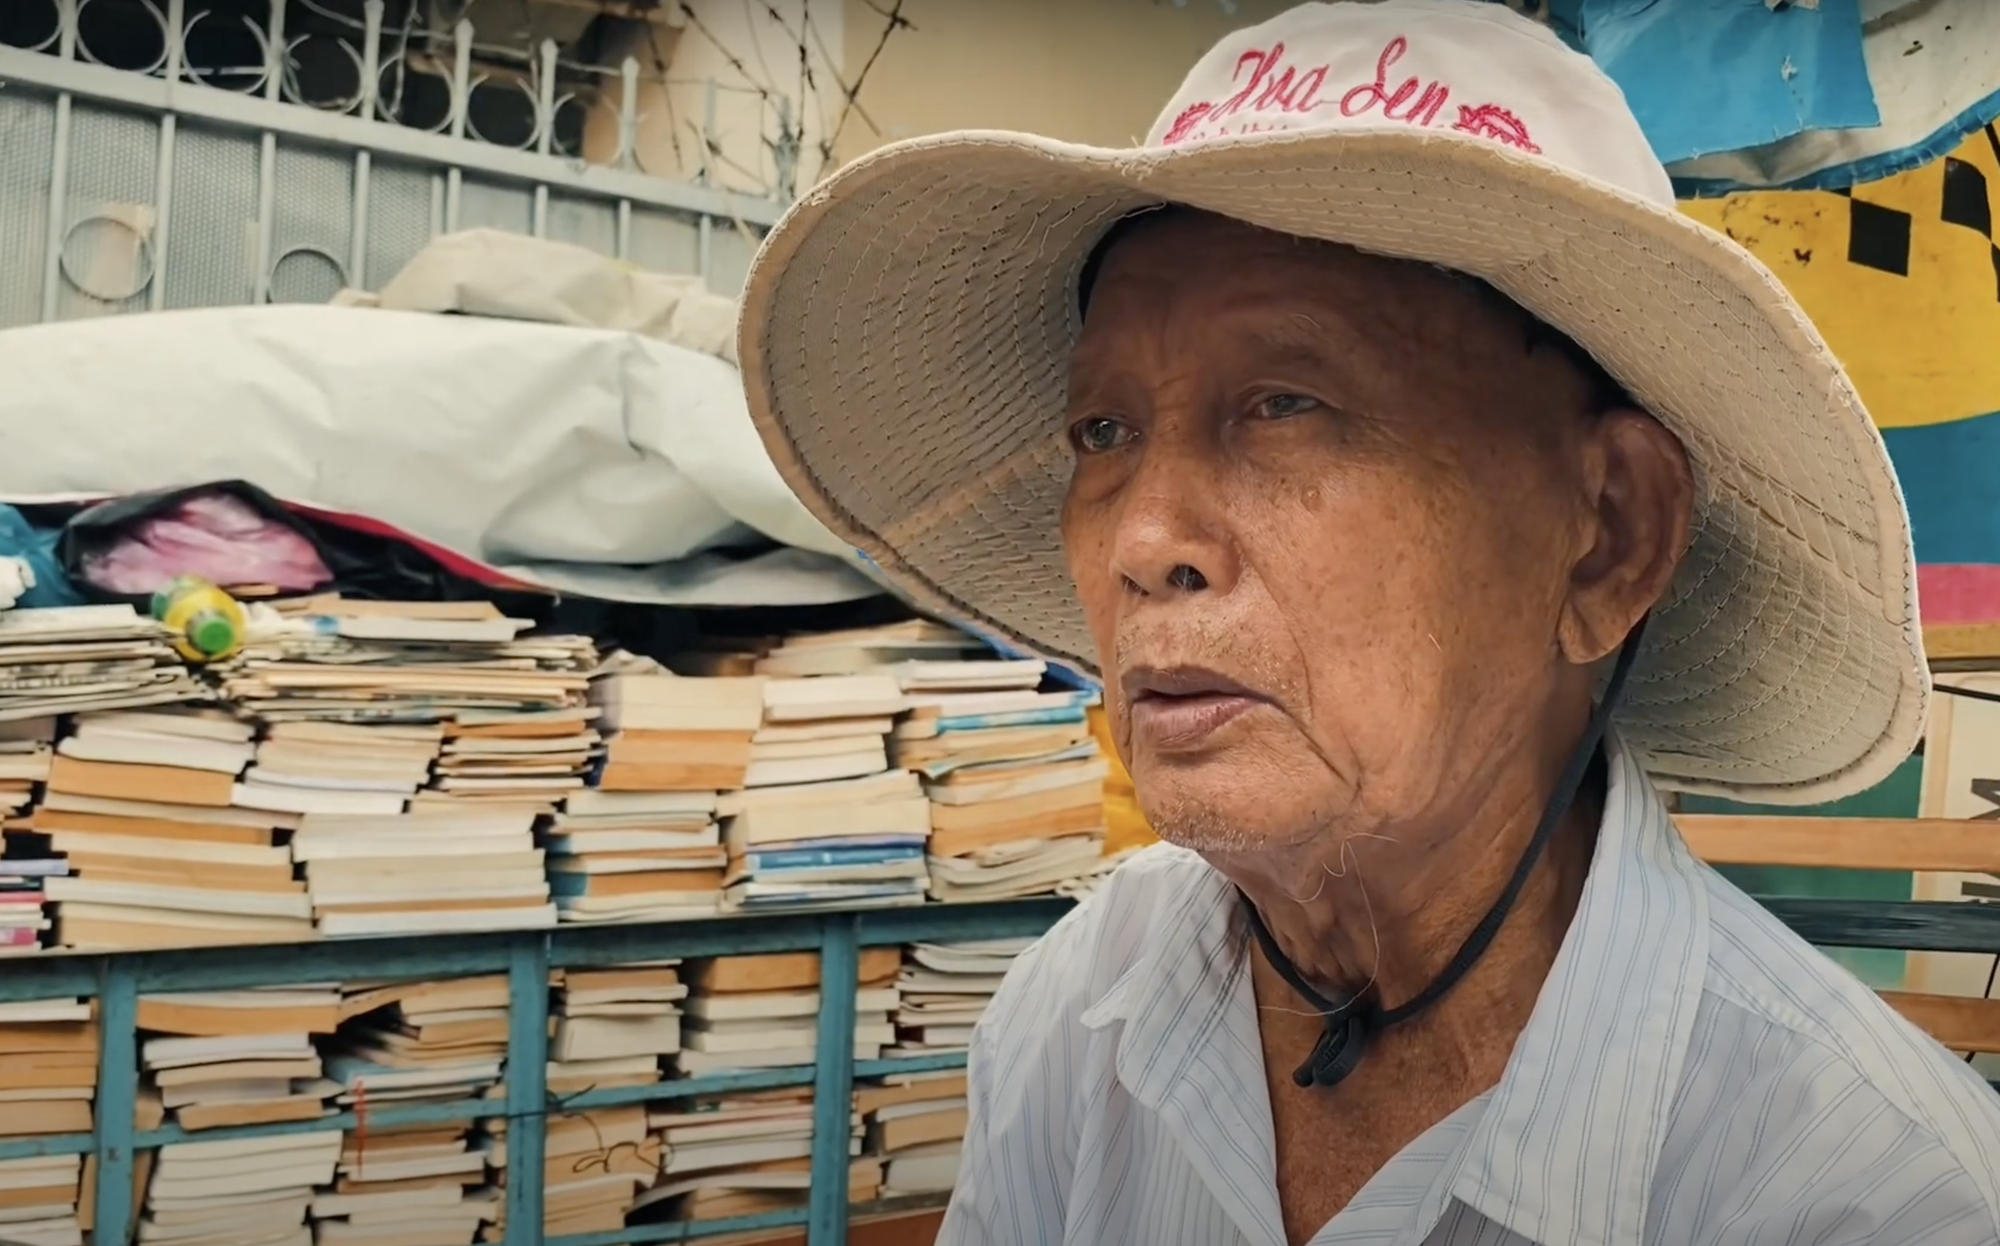 Cụ ông gần 90 tuổi đội mưa bán sách cũ ở vỉa hè Sài Gòn: "Lần nào thấy người trẻ đến mua sách là tôi vui lắm"- Ảnh 5.